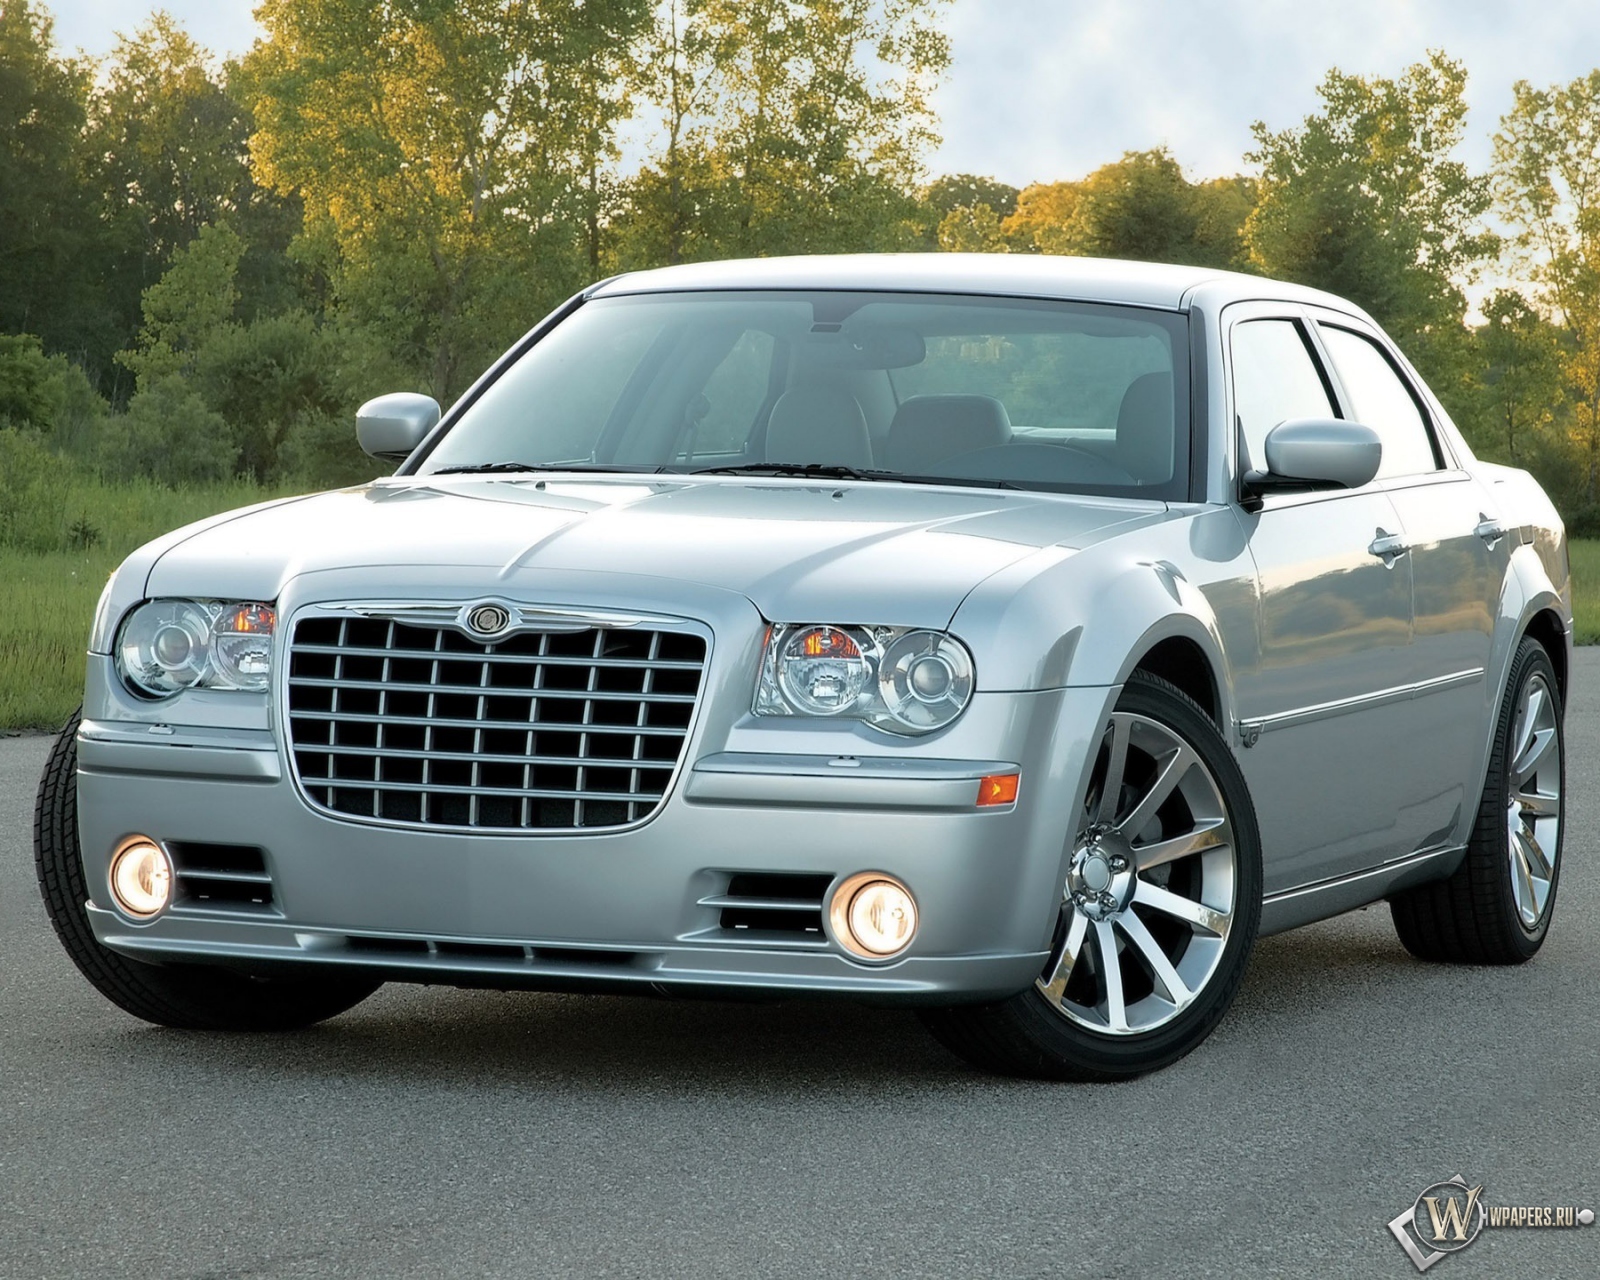 Avto na com. Chrysler 300c. Chrysler 300c srt8. Chrysler 300 srt-8. Chrysler 300 2005.